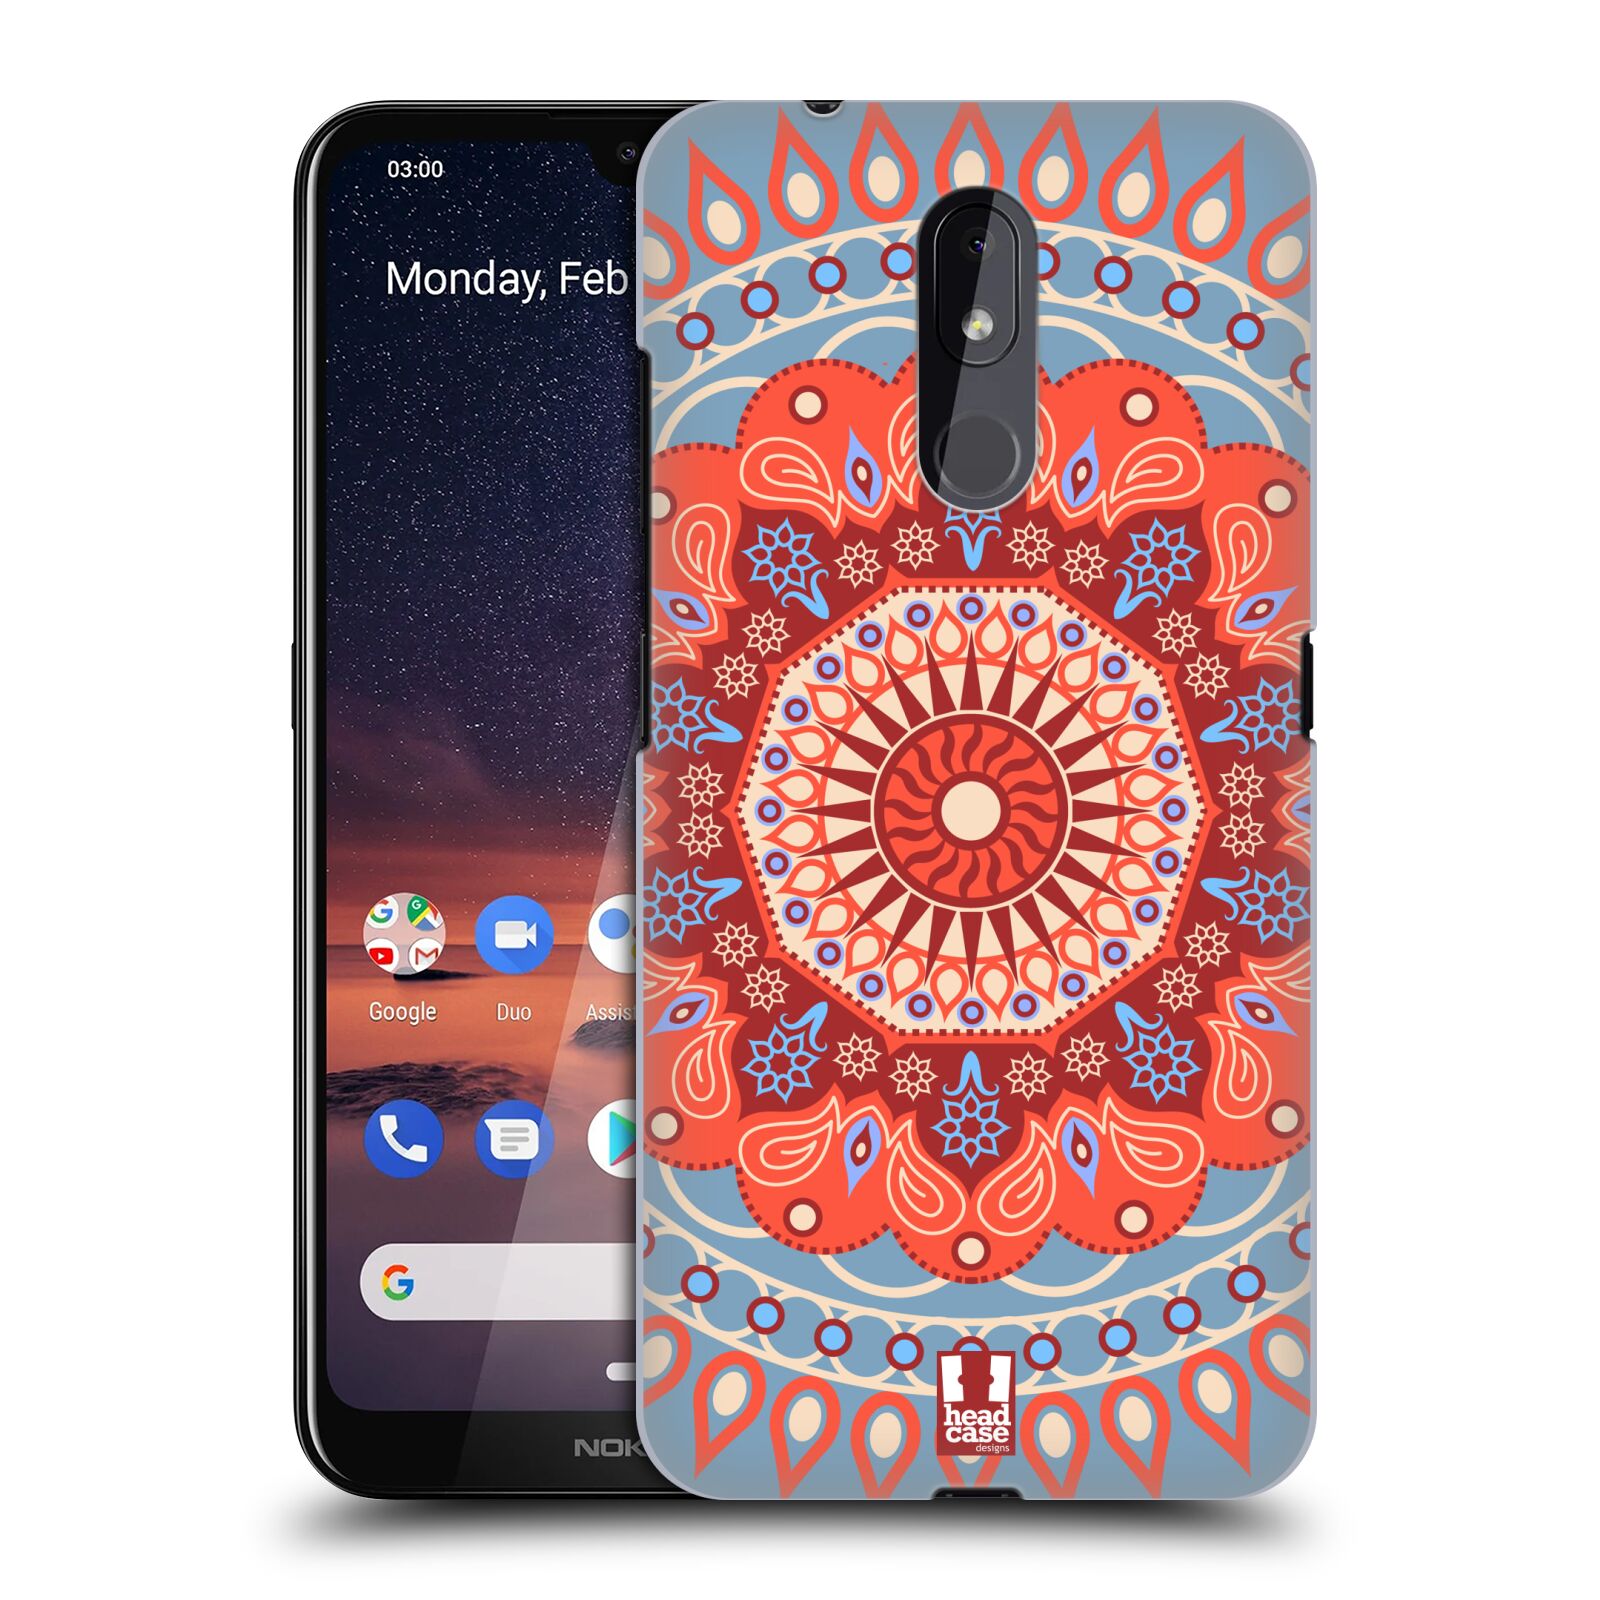 Pouzdro na mobil Nokia 3.2 - HEAD CASE - vzor Indie Mandala slunce barevný motiv ČERVENÁ A MODRÁ